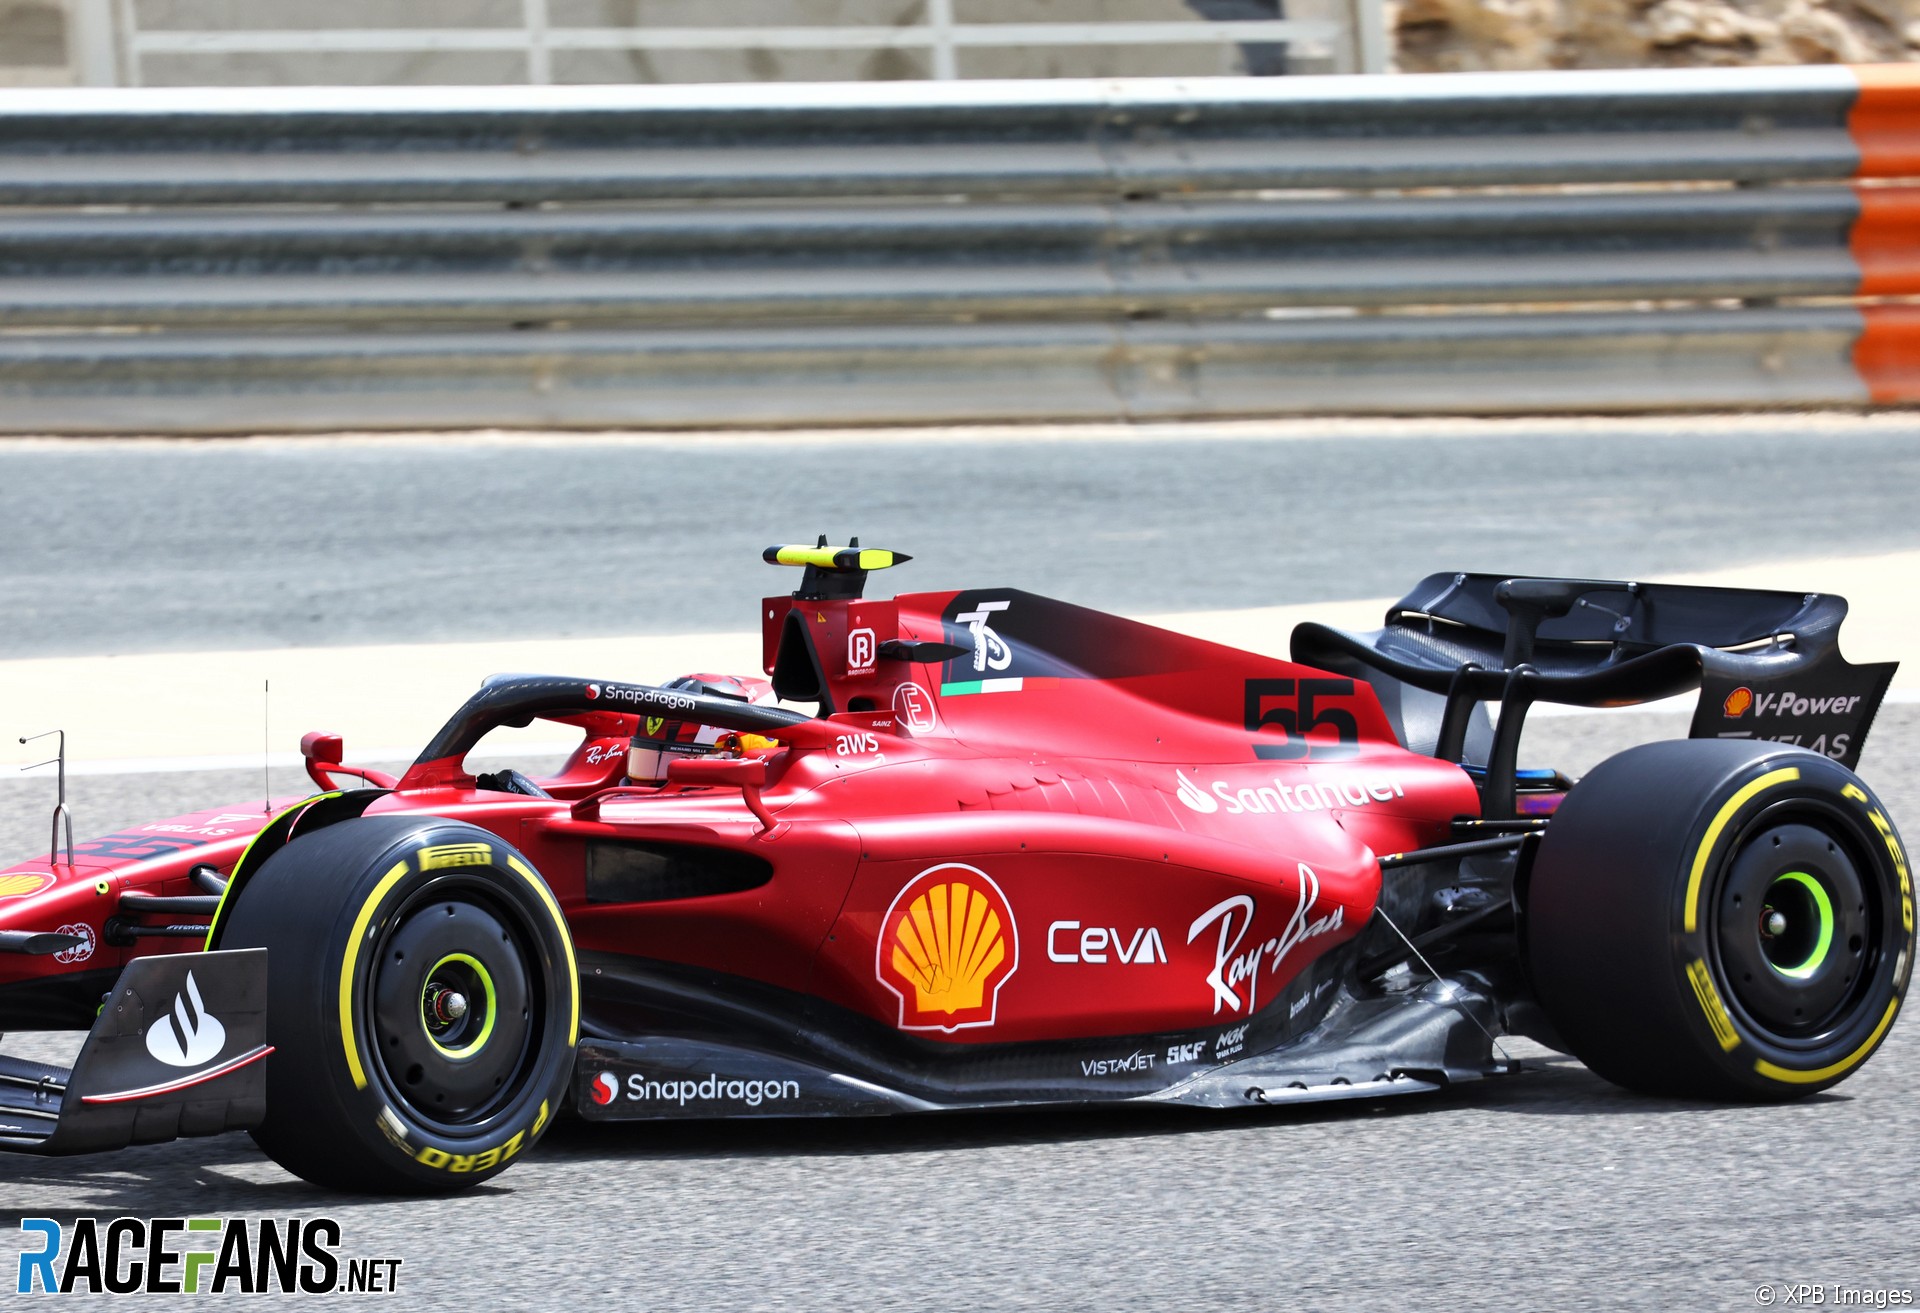 Carlos Sainz Jnr, Ferrari, Bahrain International Circuit, 2022 · RaceFans